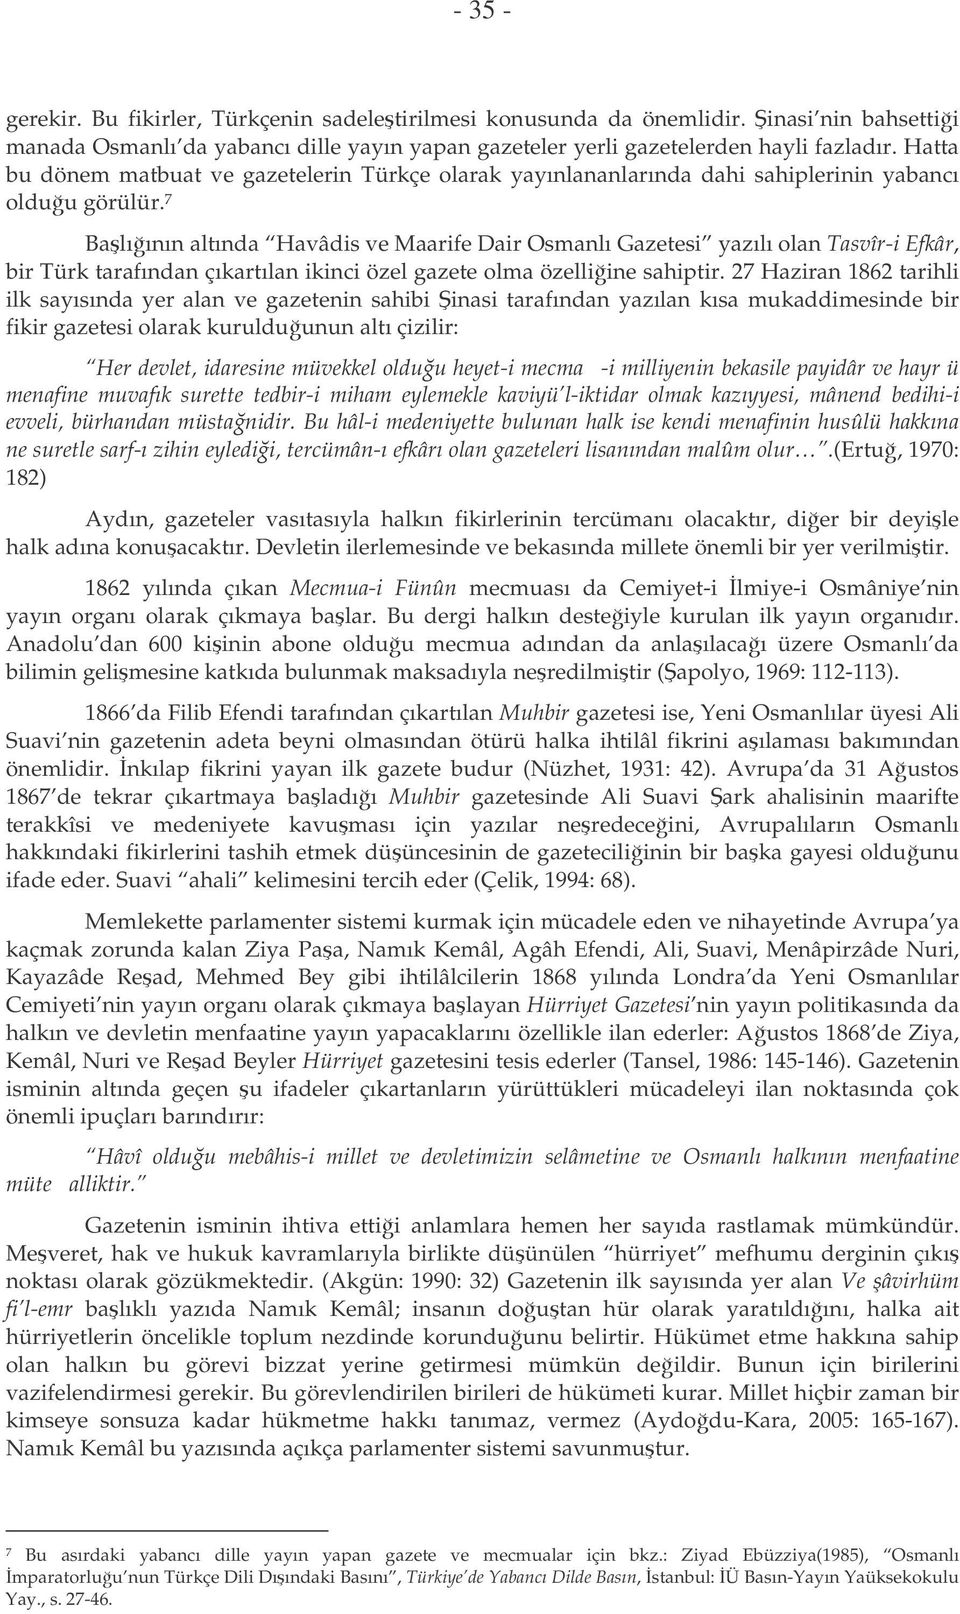 7 Balıının altında Havâdis ve Maarife Dair Osmanlı Gazetesi yazılı olan Tasvîr-i Efkâr, bir Türk tarafından çıkartılan ikinci özel gazete olma özelliine sahiptir.